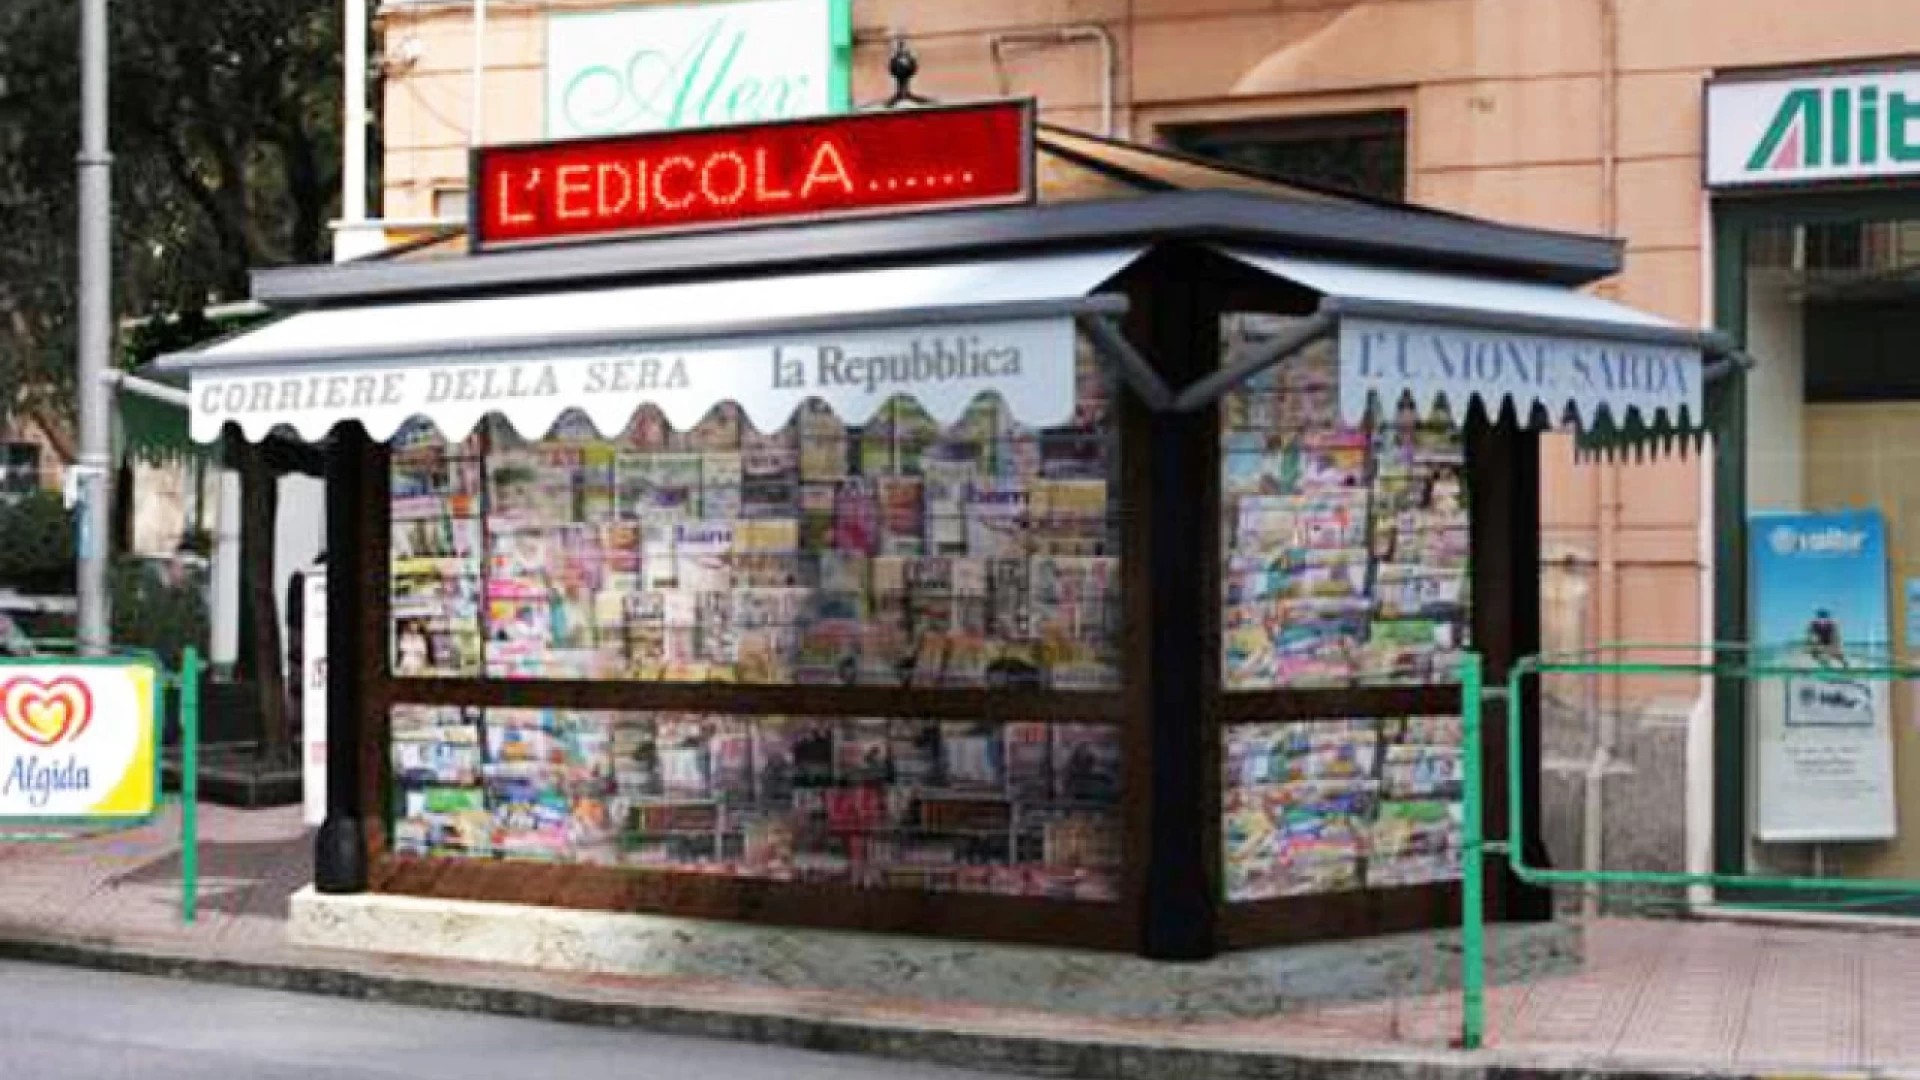 Editoria in Molise: 800 quotidiani al giorno venduti nelle 31 nuove edicole. La nota dell’Assostampa.